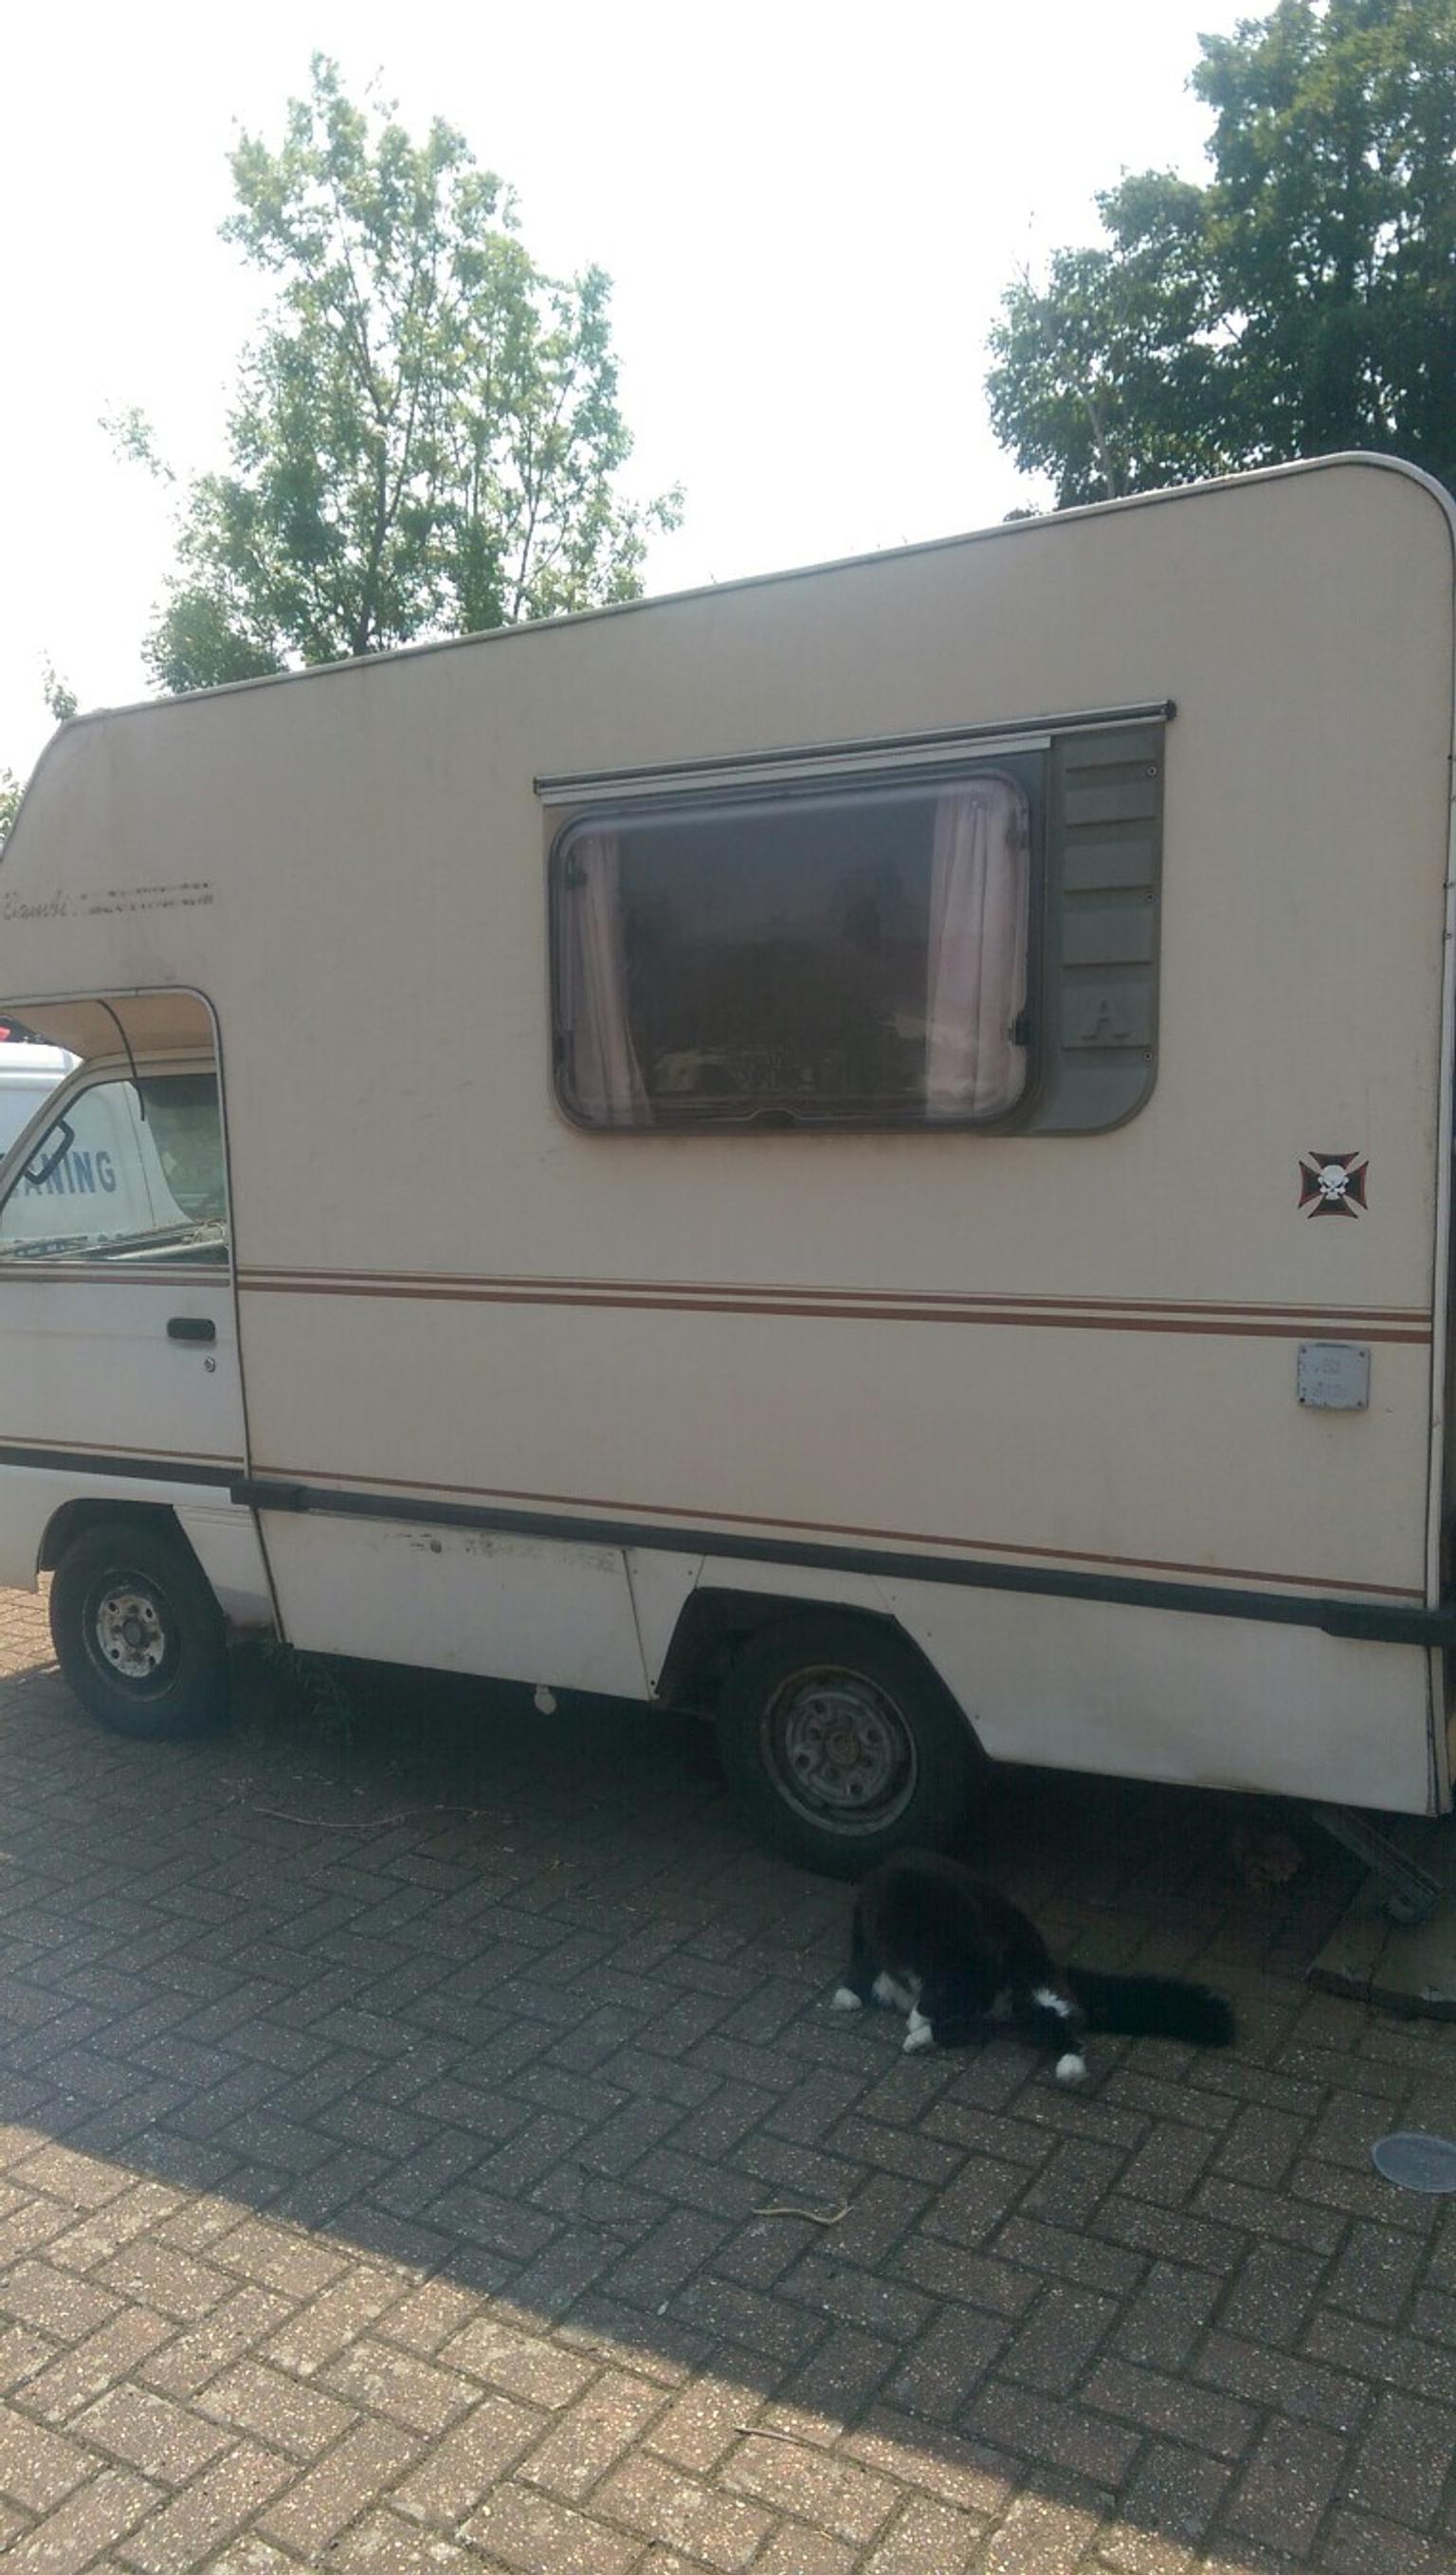 bedford camper vans for sale